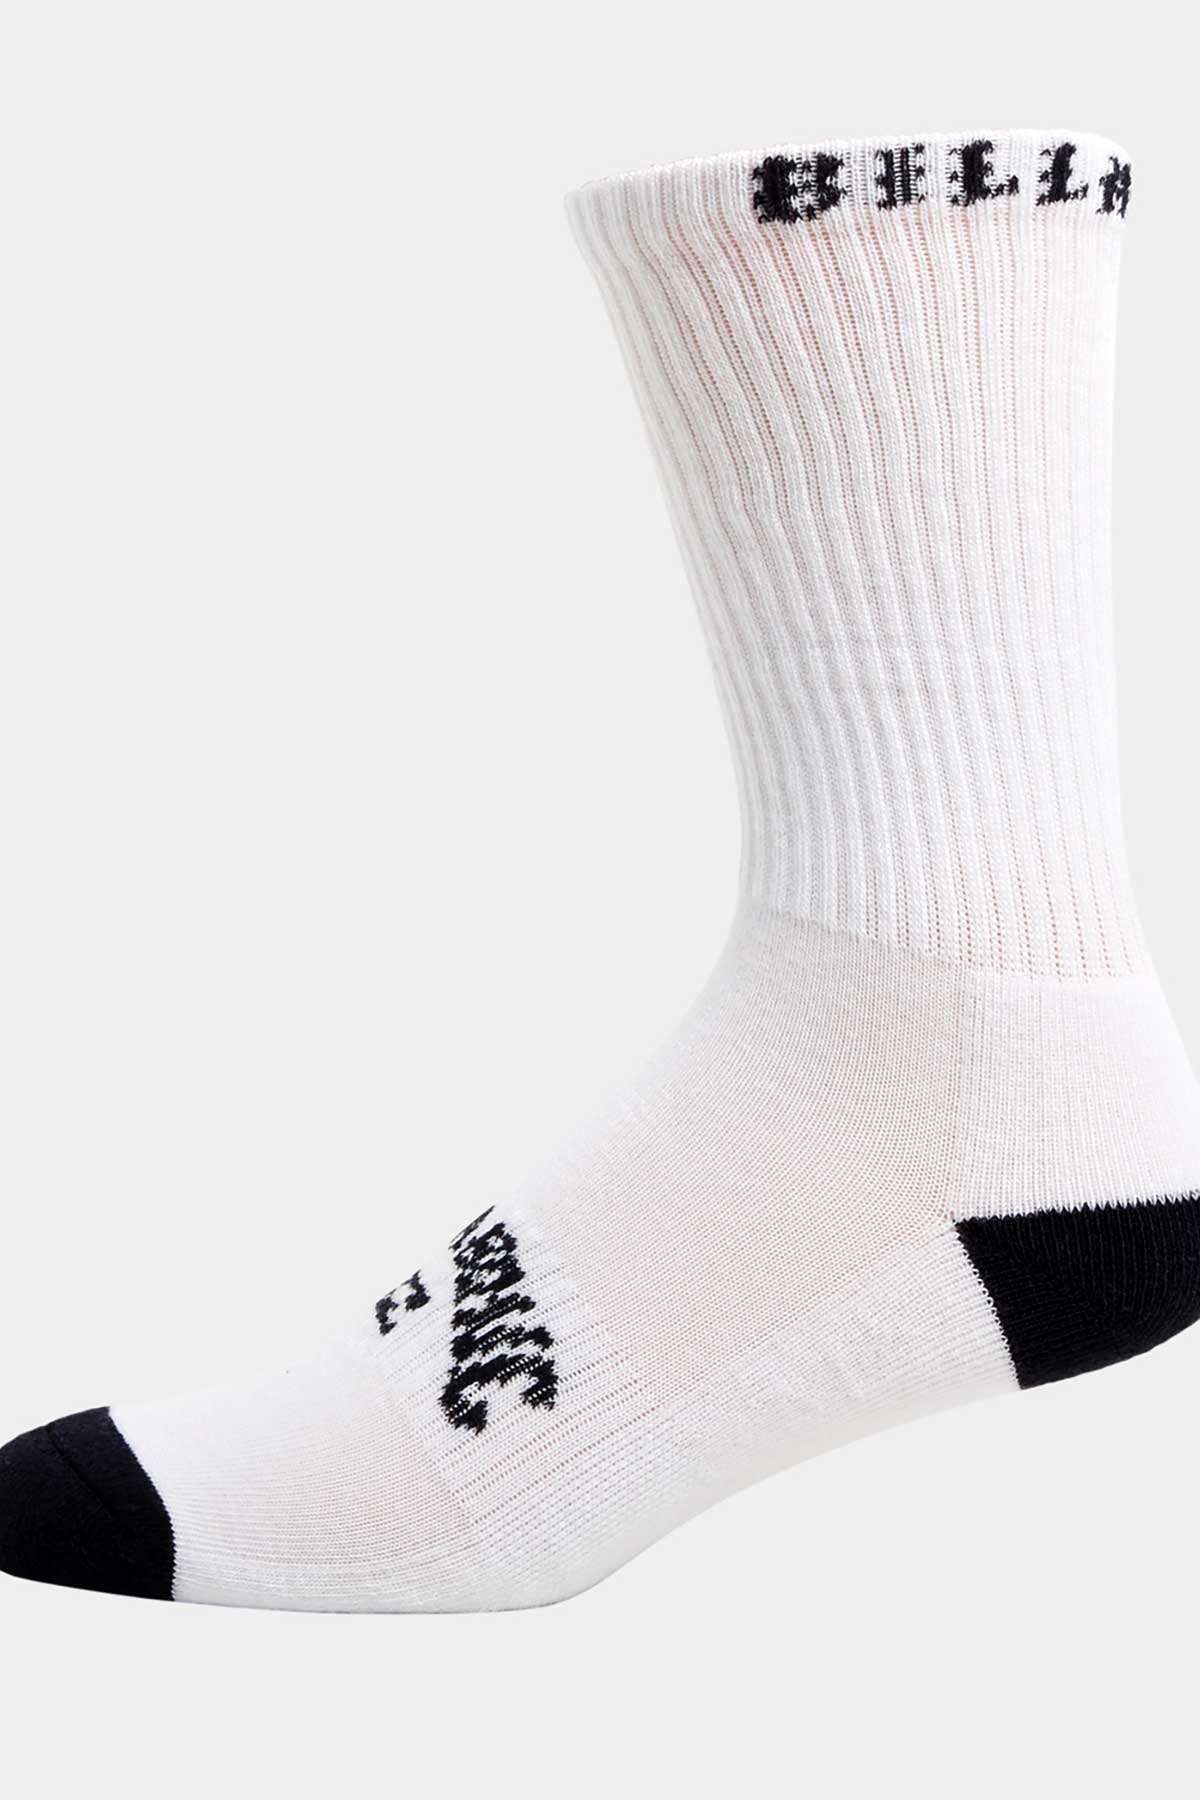 Billabong Sport Socks - 5 Pack Multi, White and Black.